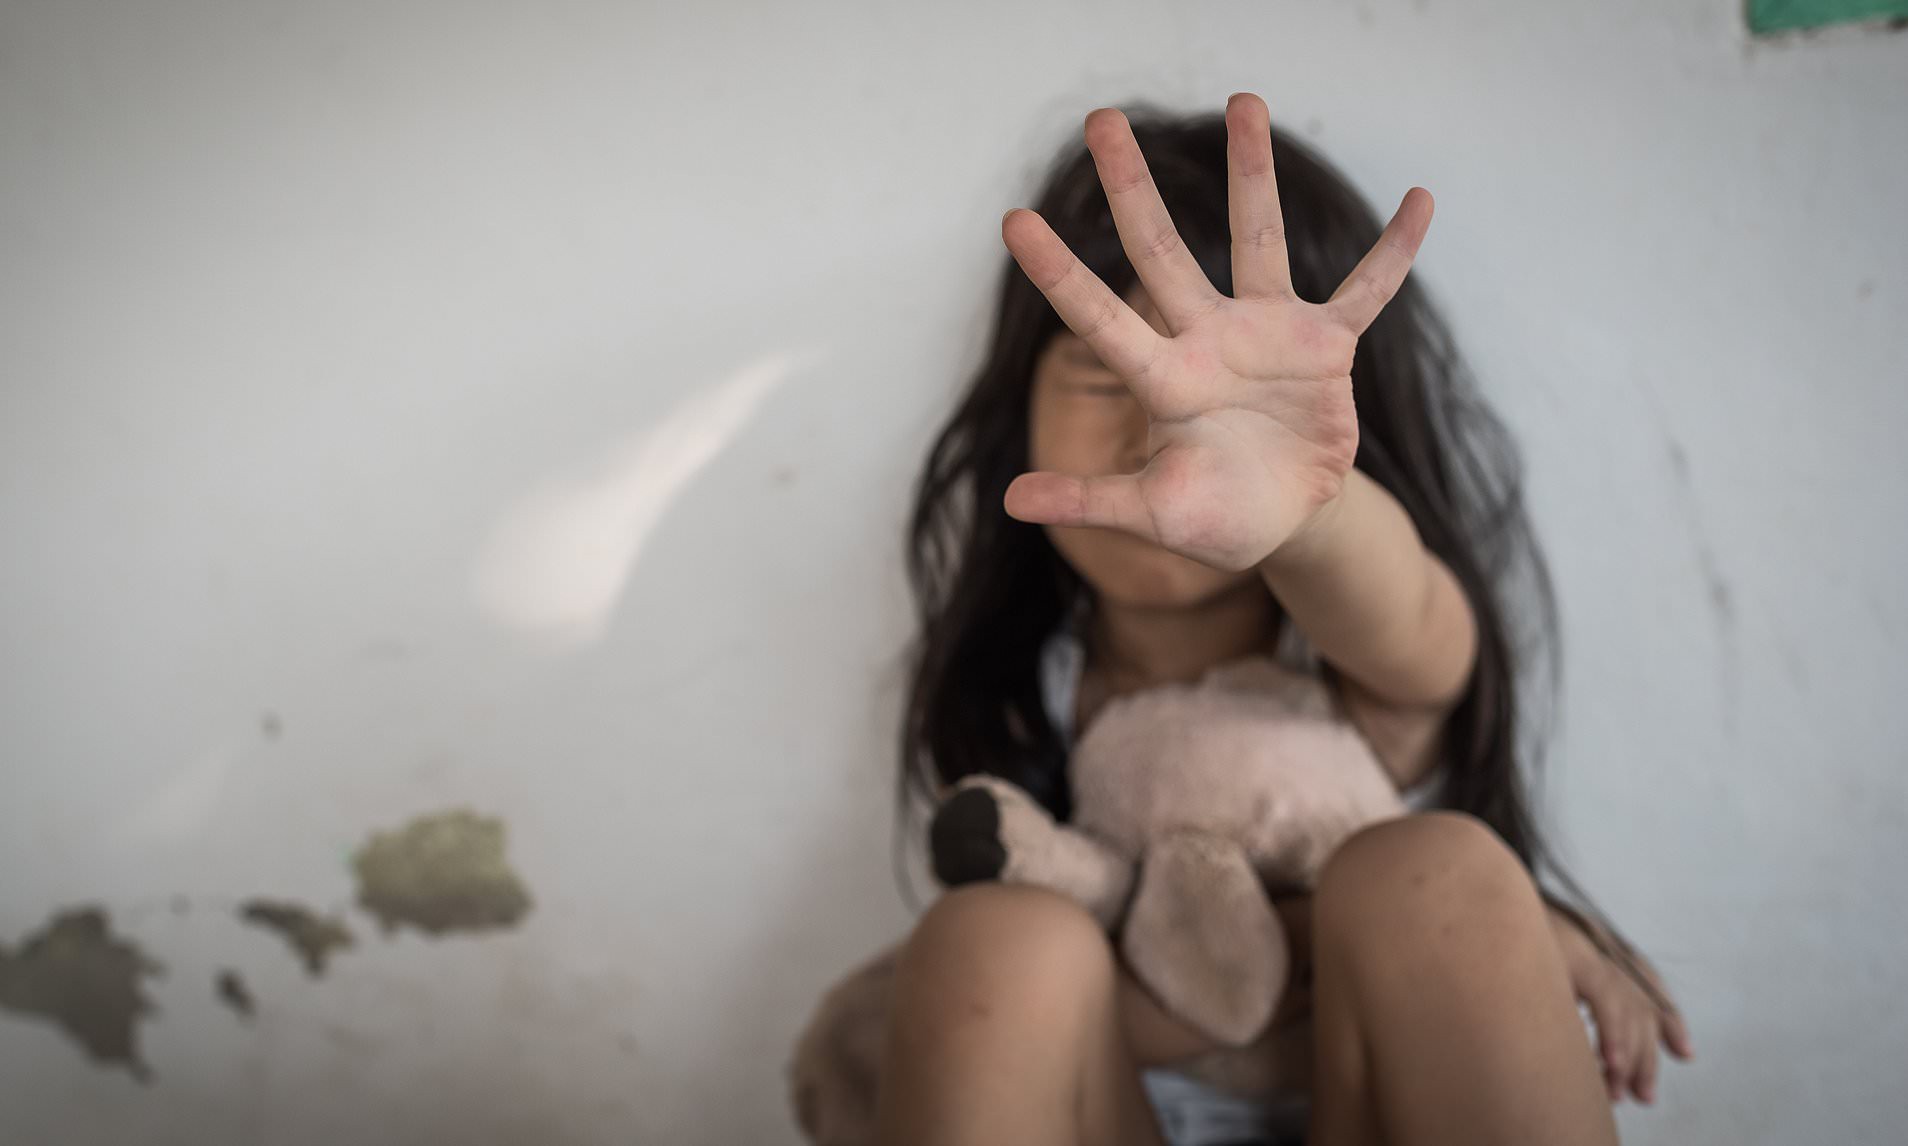 Bé gái 8 tuổi bị nam sinh 11 tuổi cưỡng bức trong nhà vệ sinh, bức xúc nhất là thái độ của cảnh sát và giáo viên trước vụ việc-1